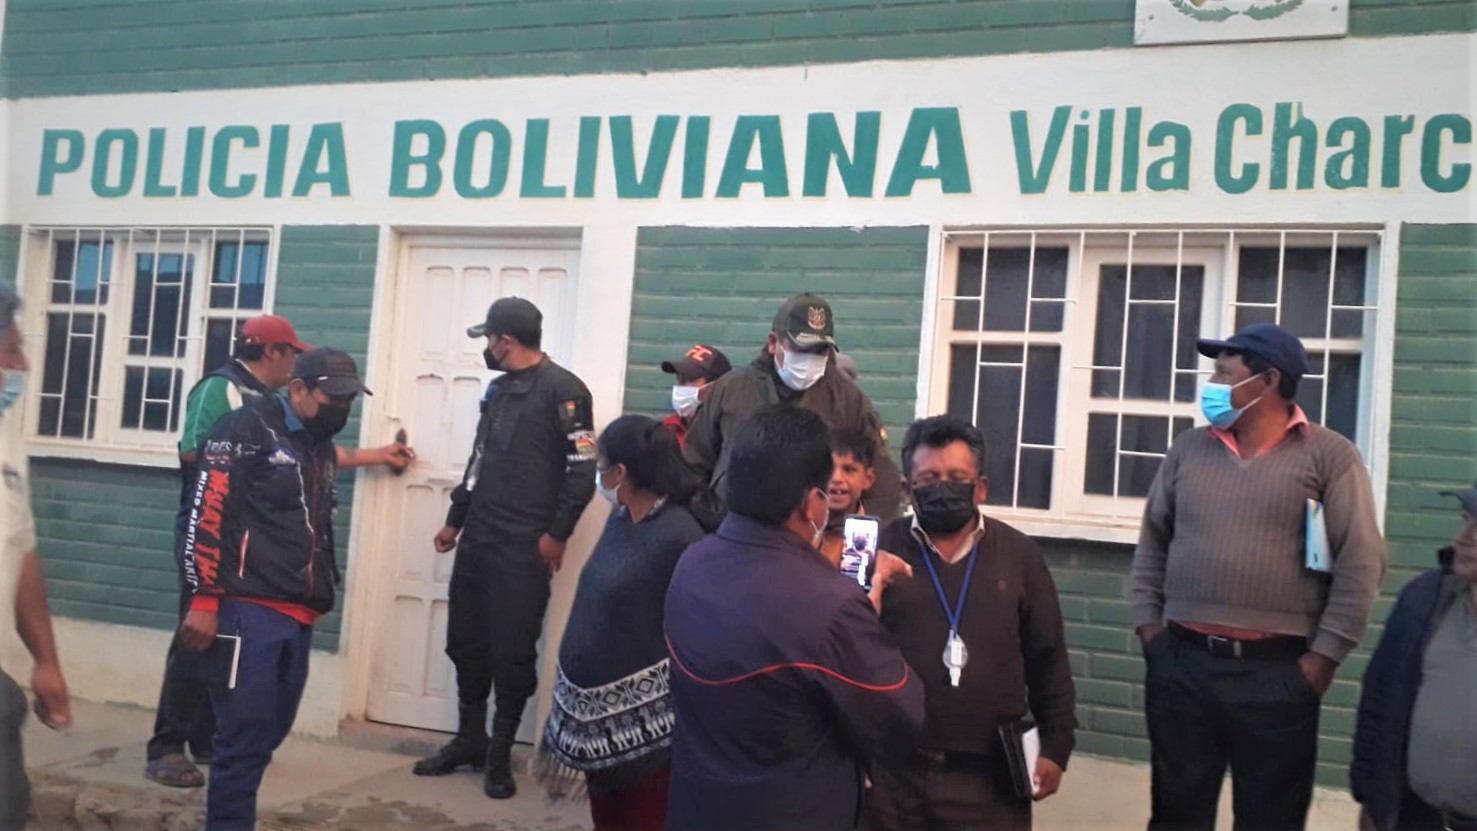 Restituyen servicio policial en Villa Charcas después de casi un mes